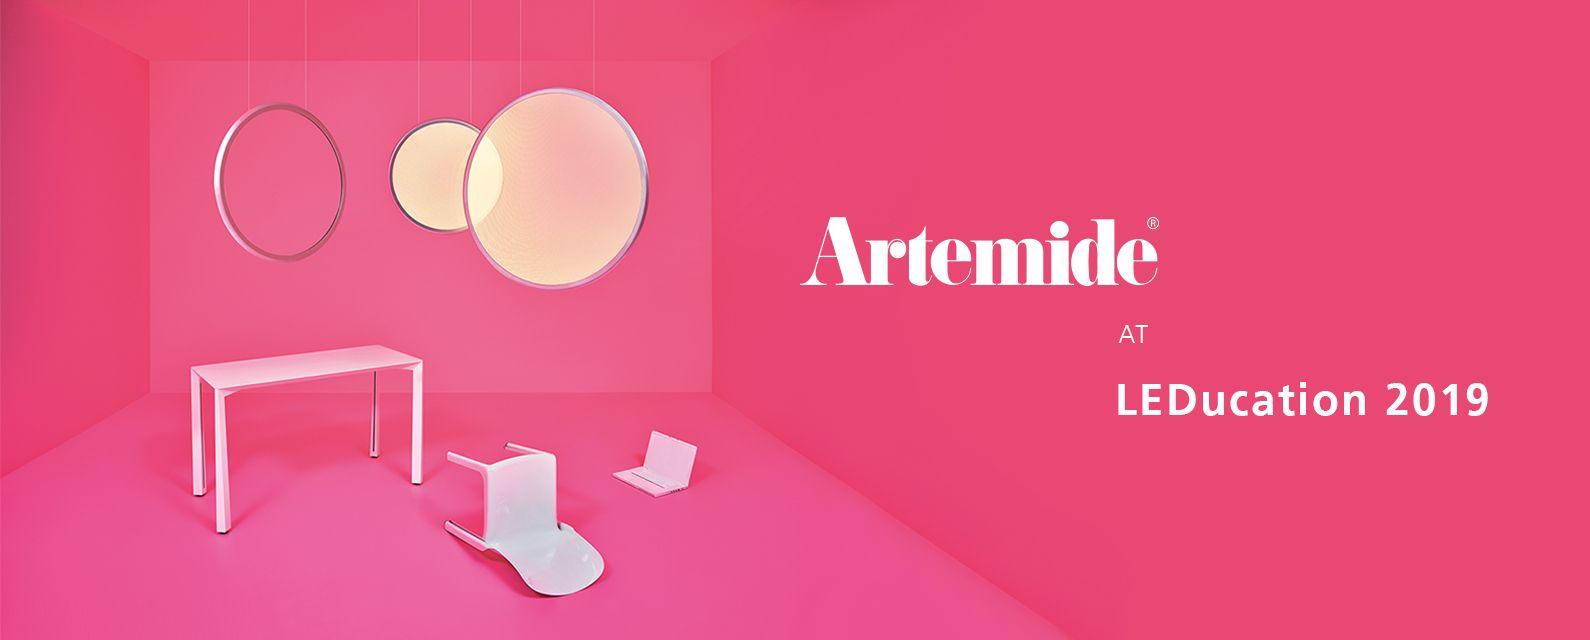 Artemide Logo - Visit Artemide at LEDucation 2019 | Artemide North America